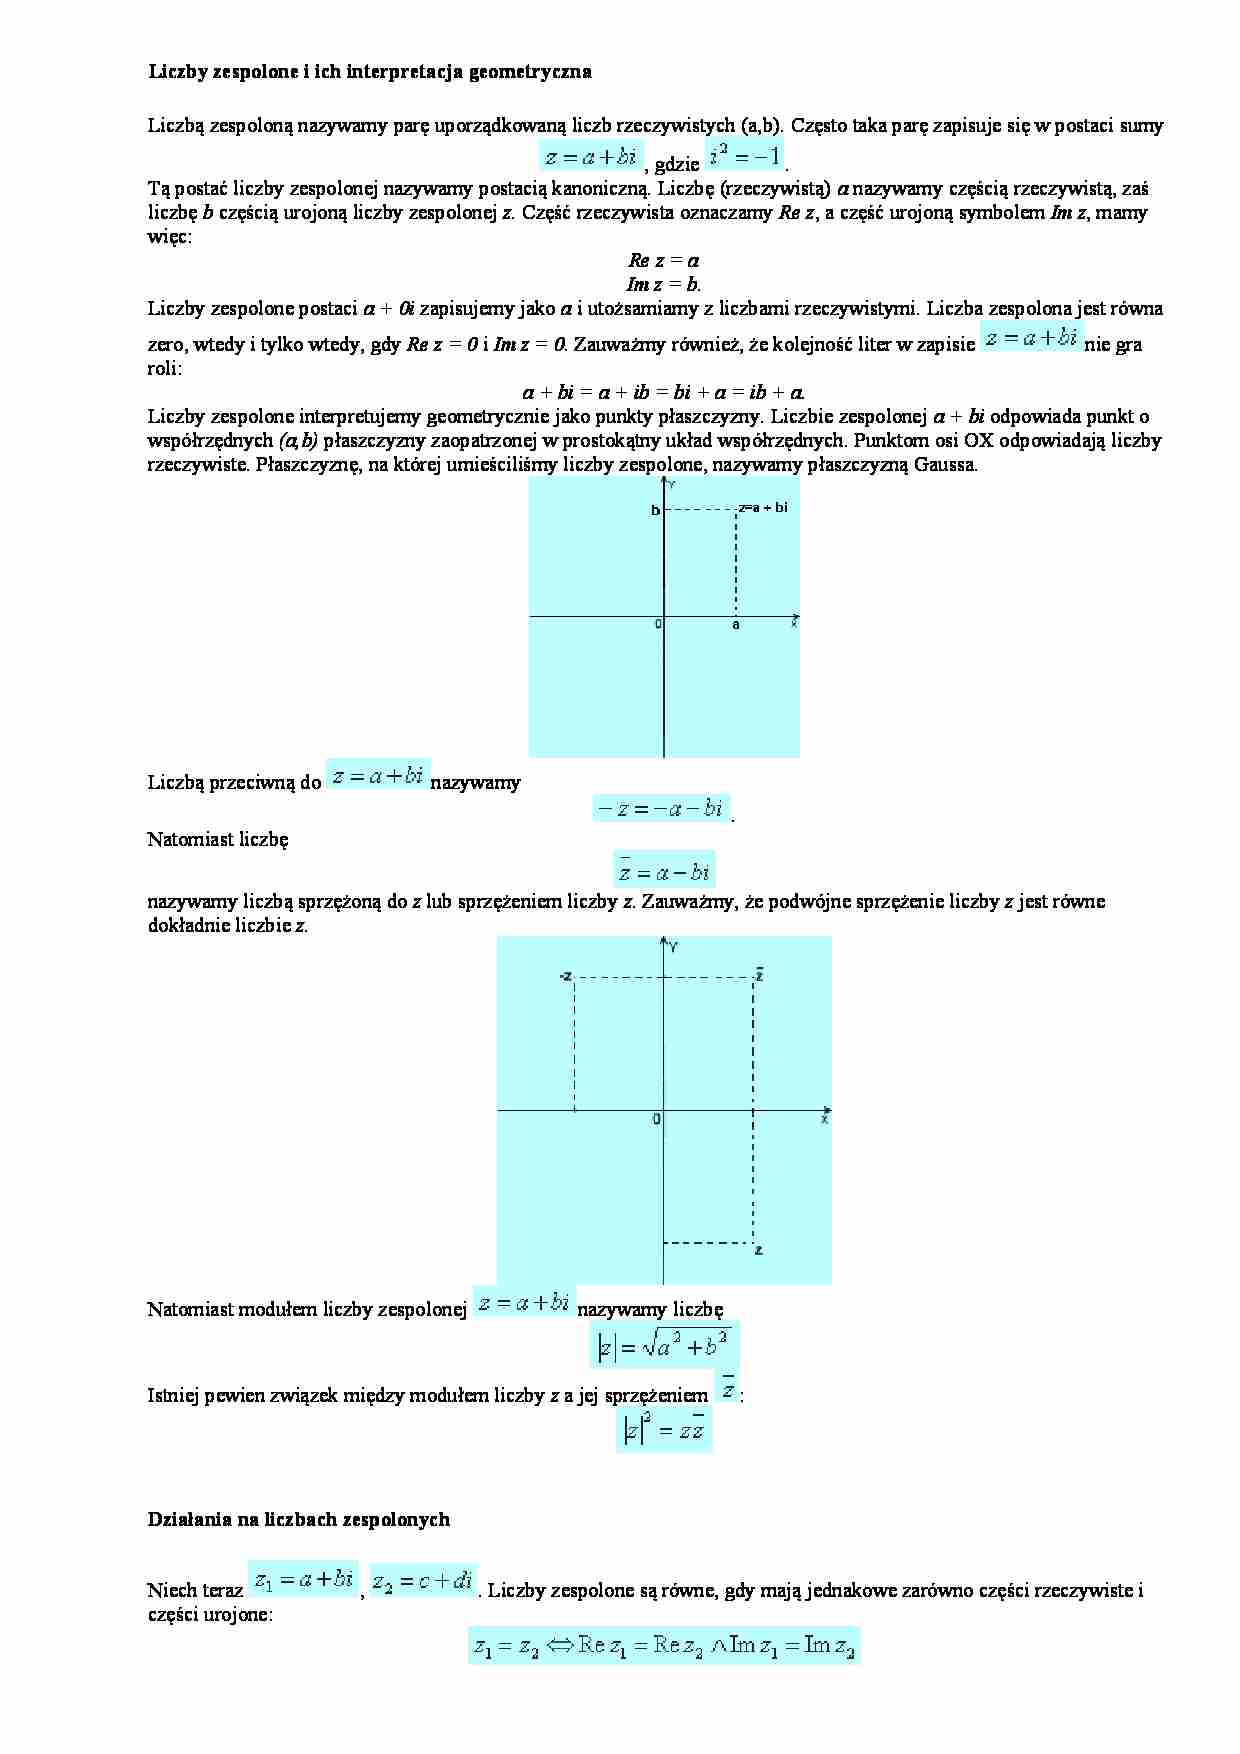 Liczby zespolone i ich interpretacja geometryczna - działania - strona 1